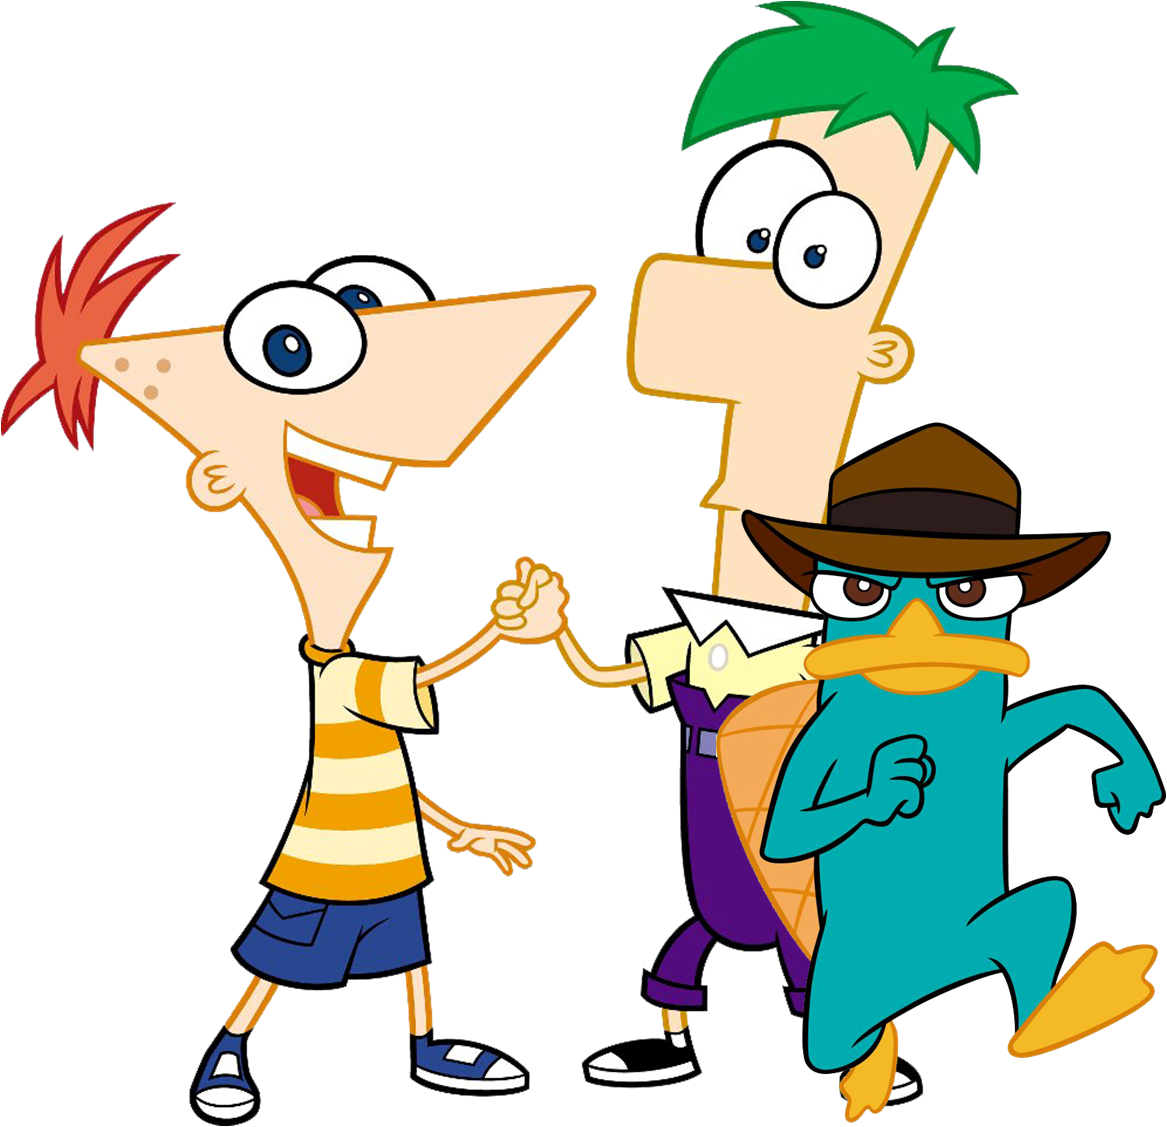 Disney XD anuncia el final de Phineas y Ferb - Series Adictos